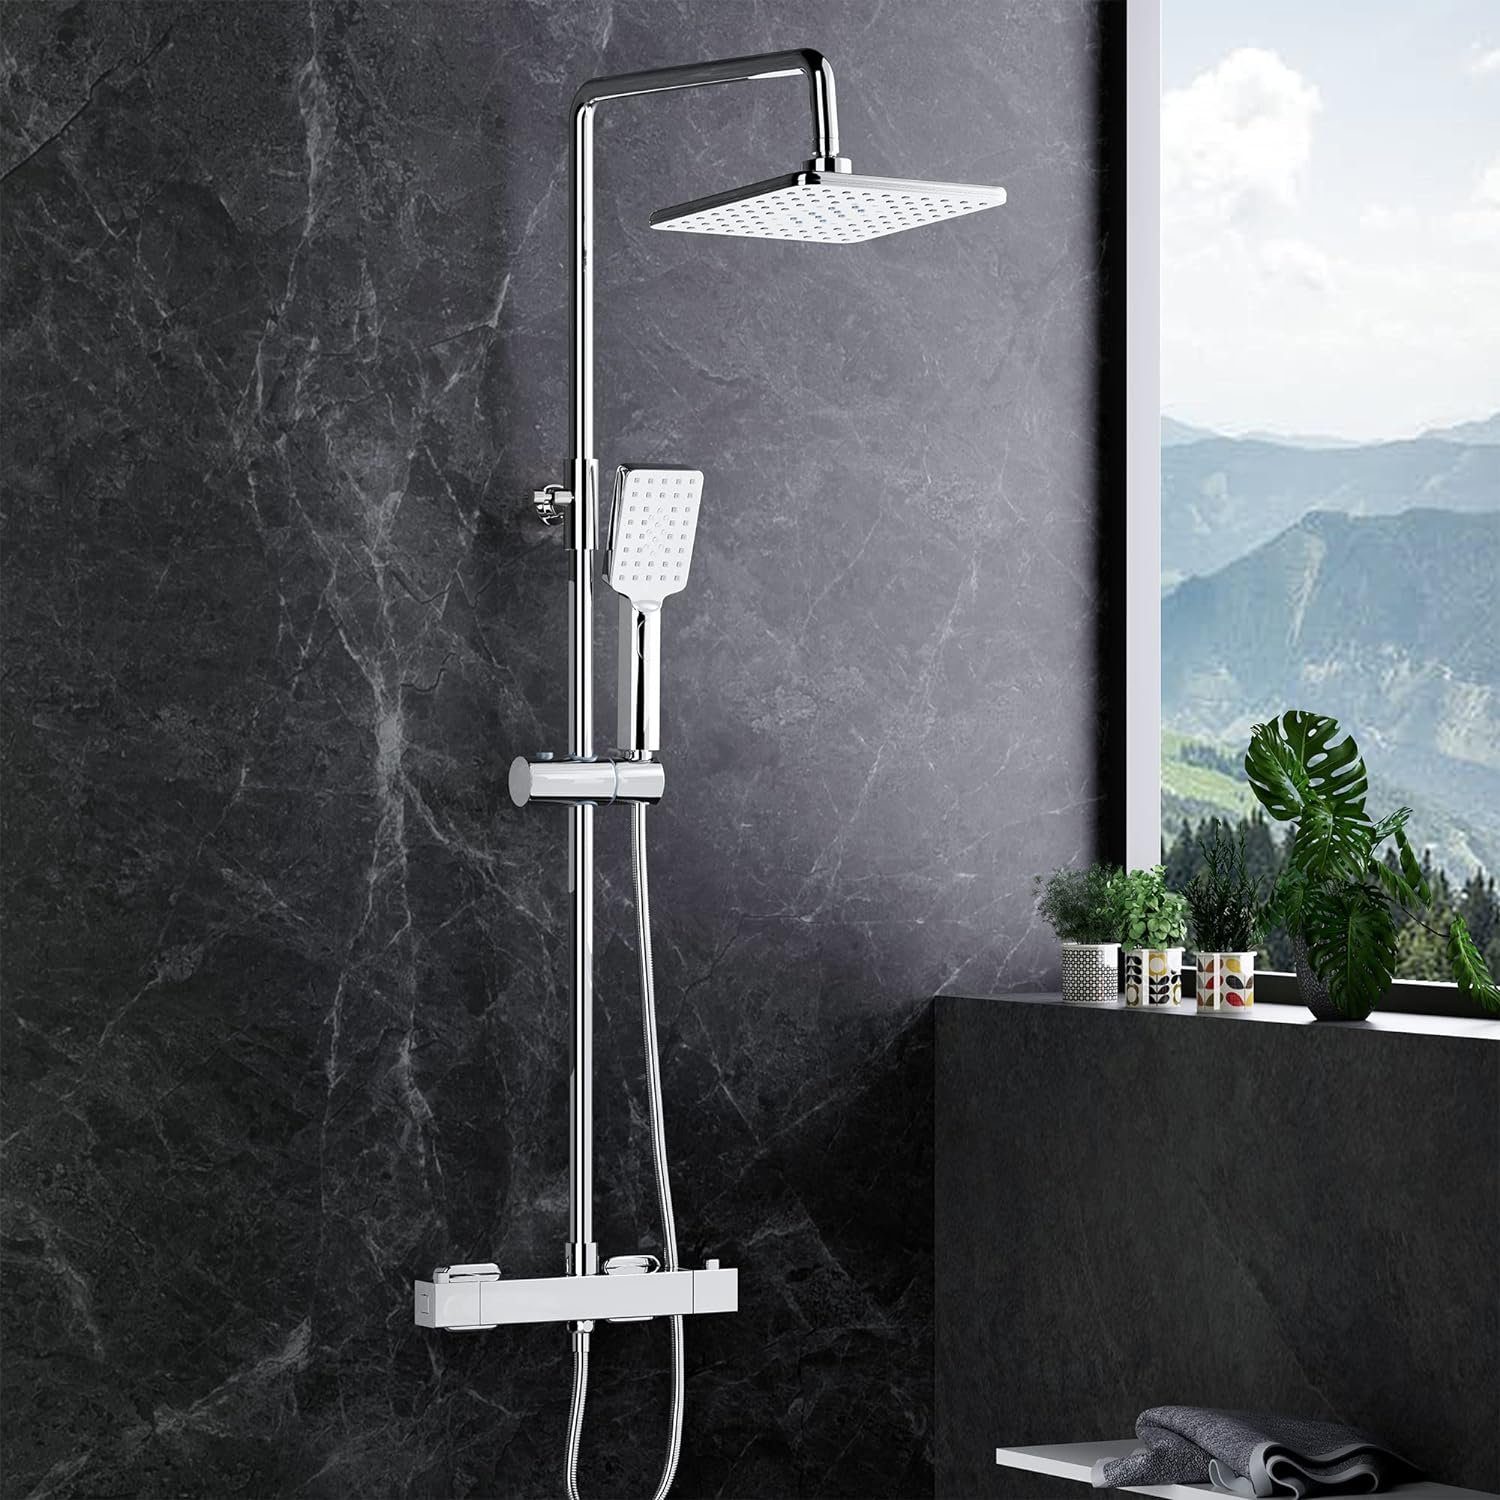 MORADO Duschsystem Bemühung um ein angenehmes Kundenerlebnis, Dushcharmatur komplettset,Regendusche mit Armatur,Duschset Thermostat